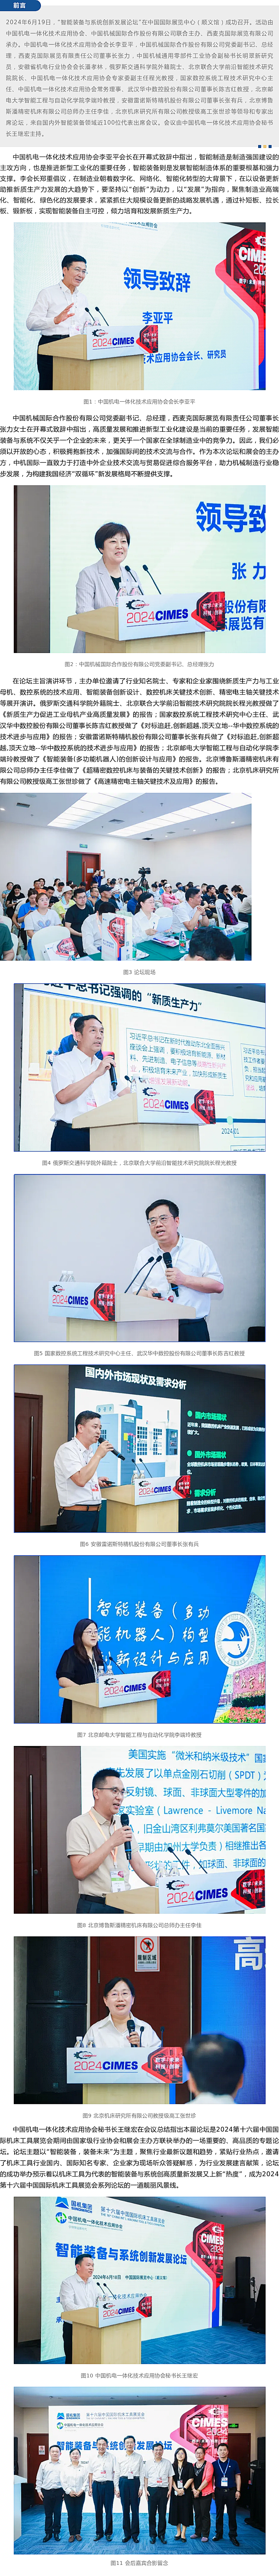 智能装备与系统创新发展论坛在北京成功召开